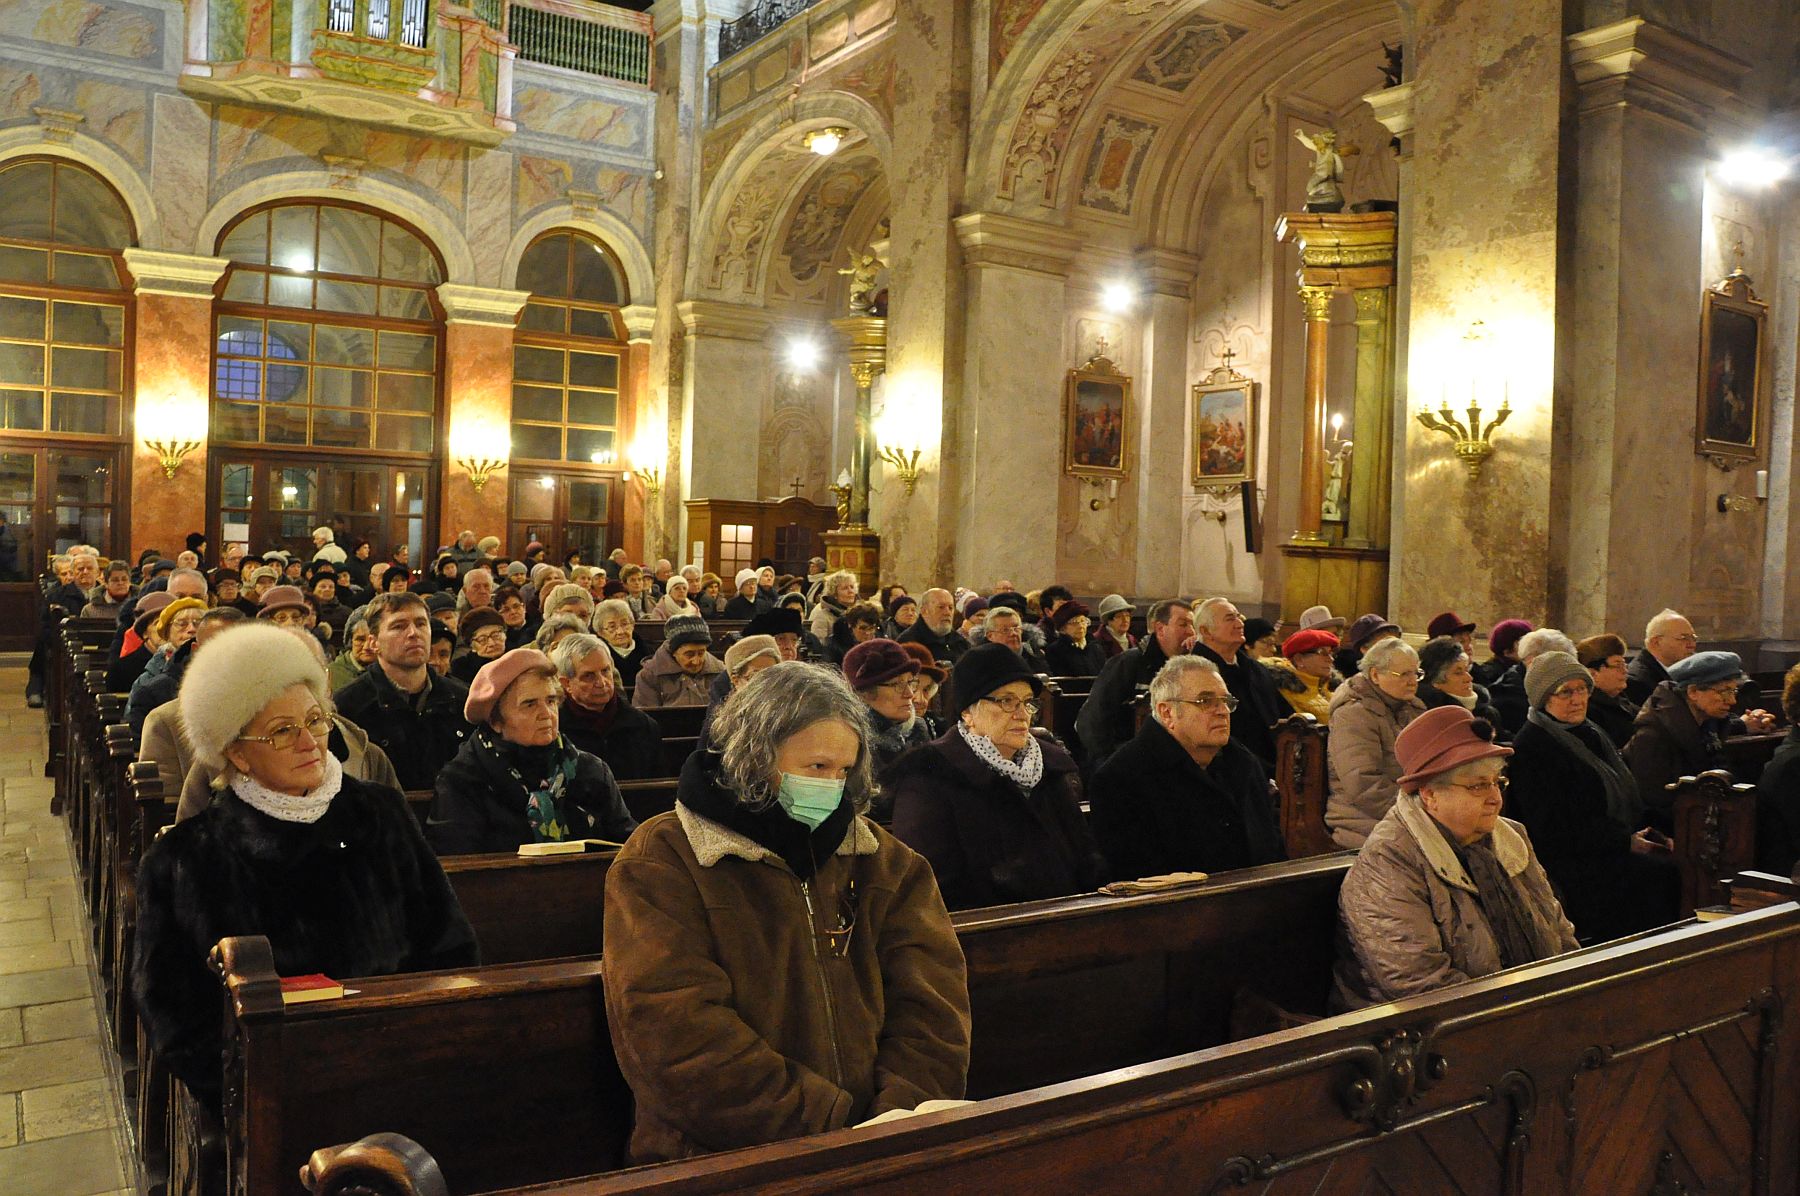 Püspöki misét imádkoztak a szenvedőkért a Betegek Világnapján Székesfehérváron